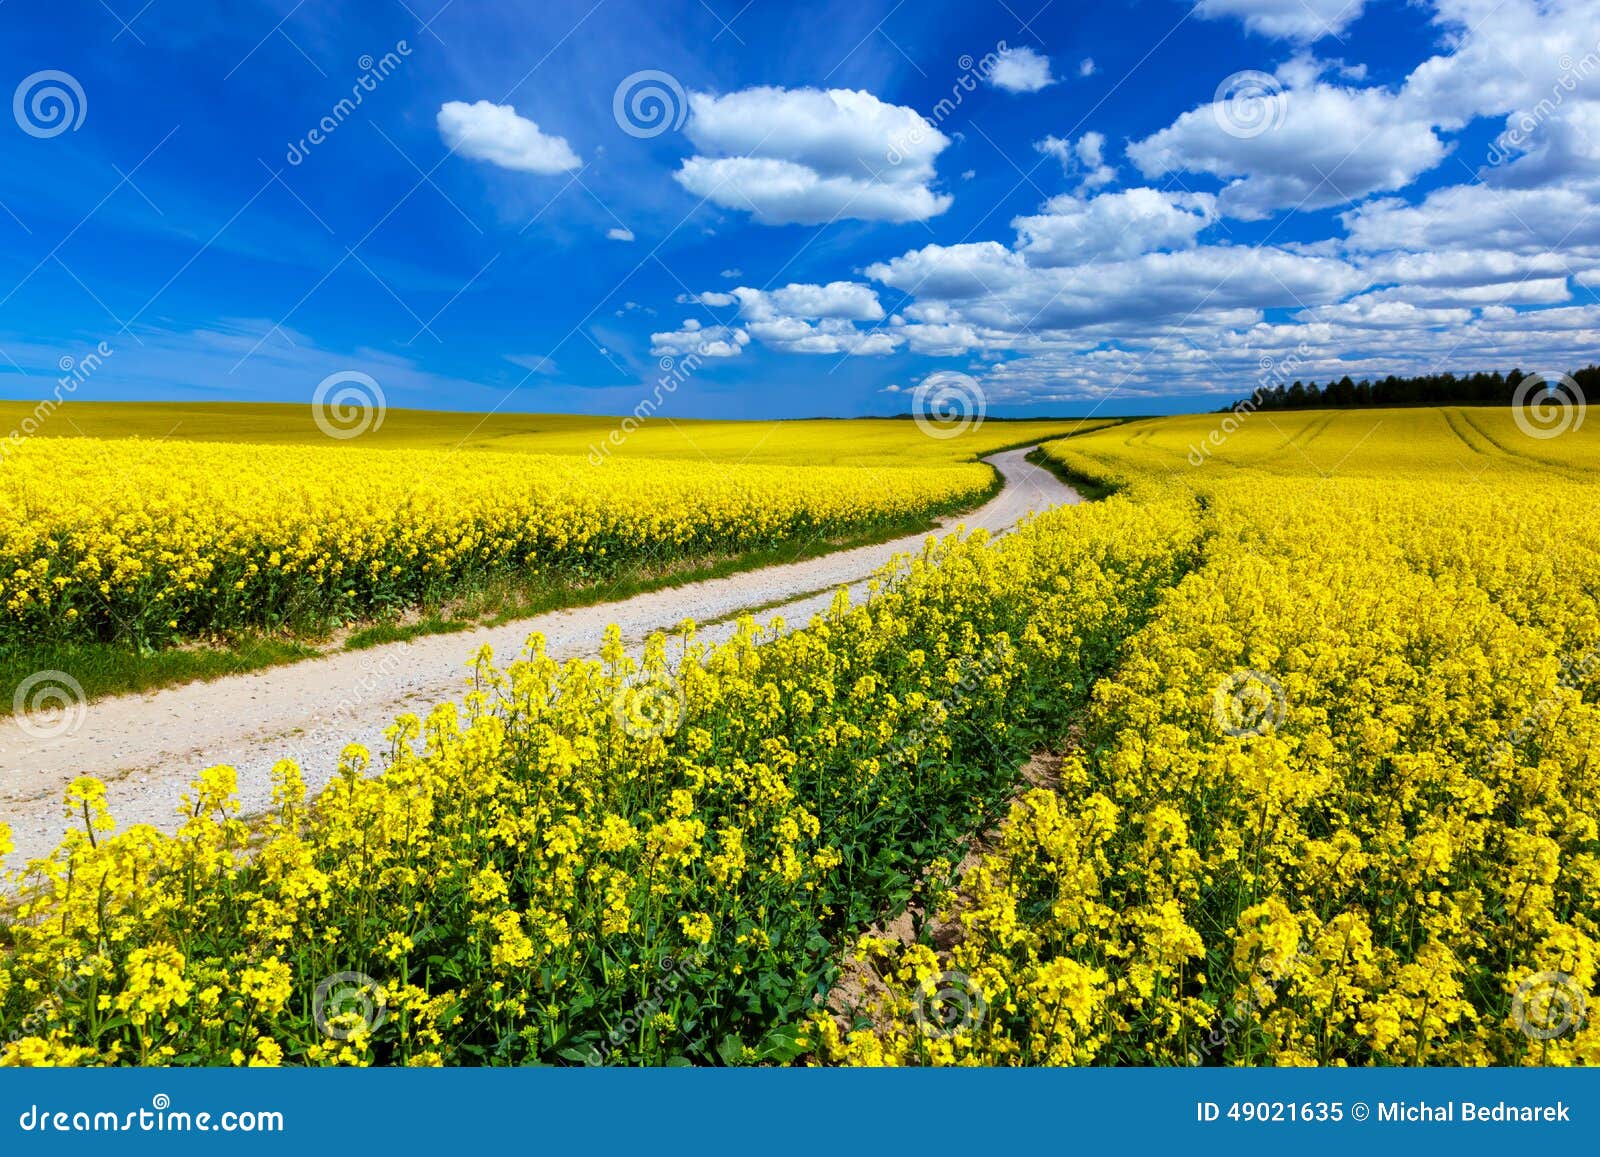 paysage-de​-gisement-​de-ressort​-de-campag​ne-avec-le​s-fleurs-j​aunes-viol​-49021635